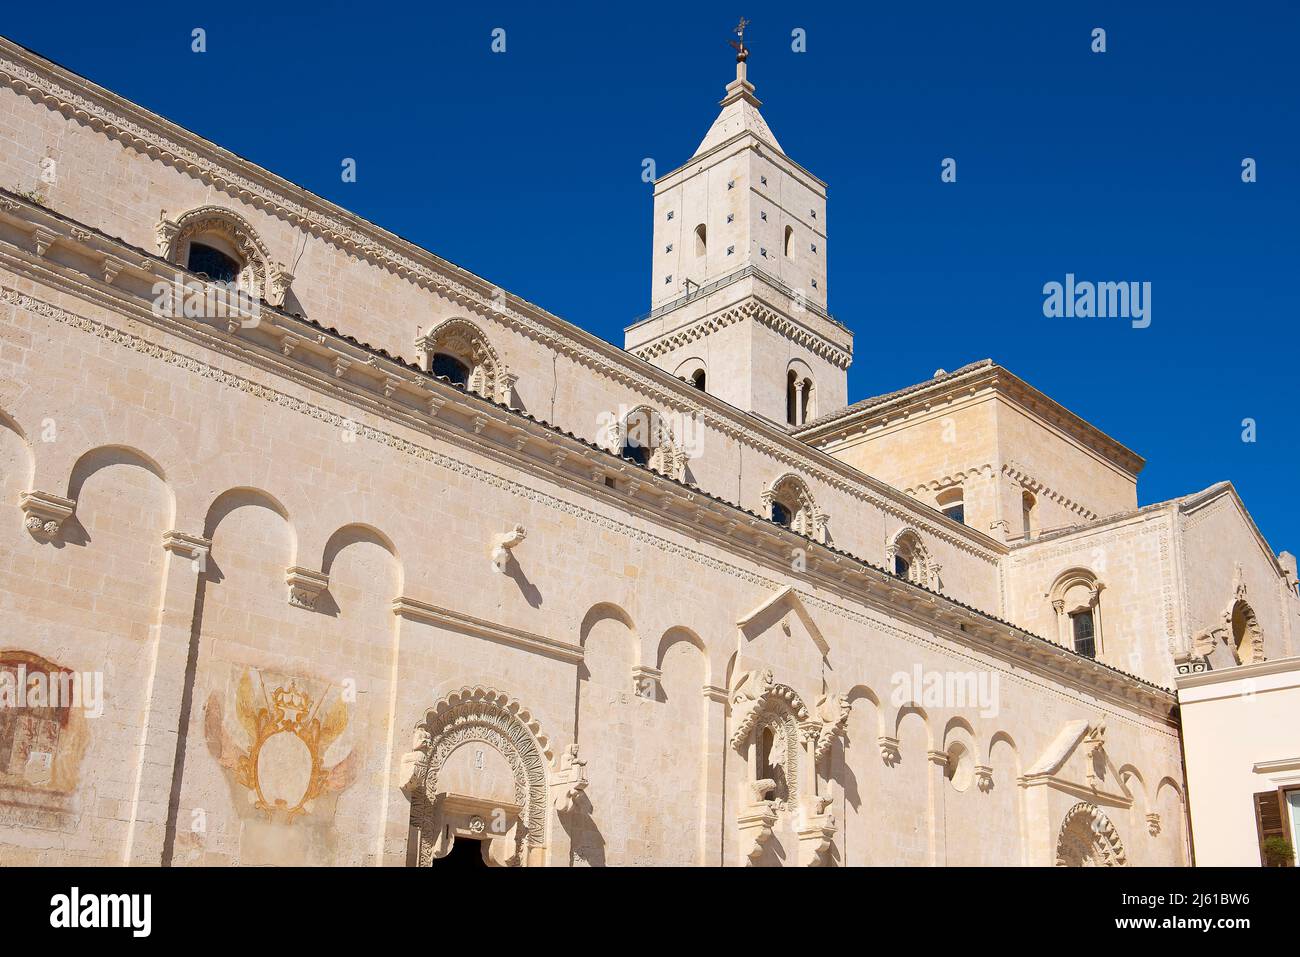 La chiesa cattedrale di Piazza Duomo si trova nel quartiere Sasso Caveoso di Matera, Basilicata, Italia meridionale, Foto Stock